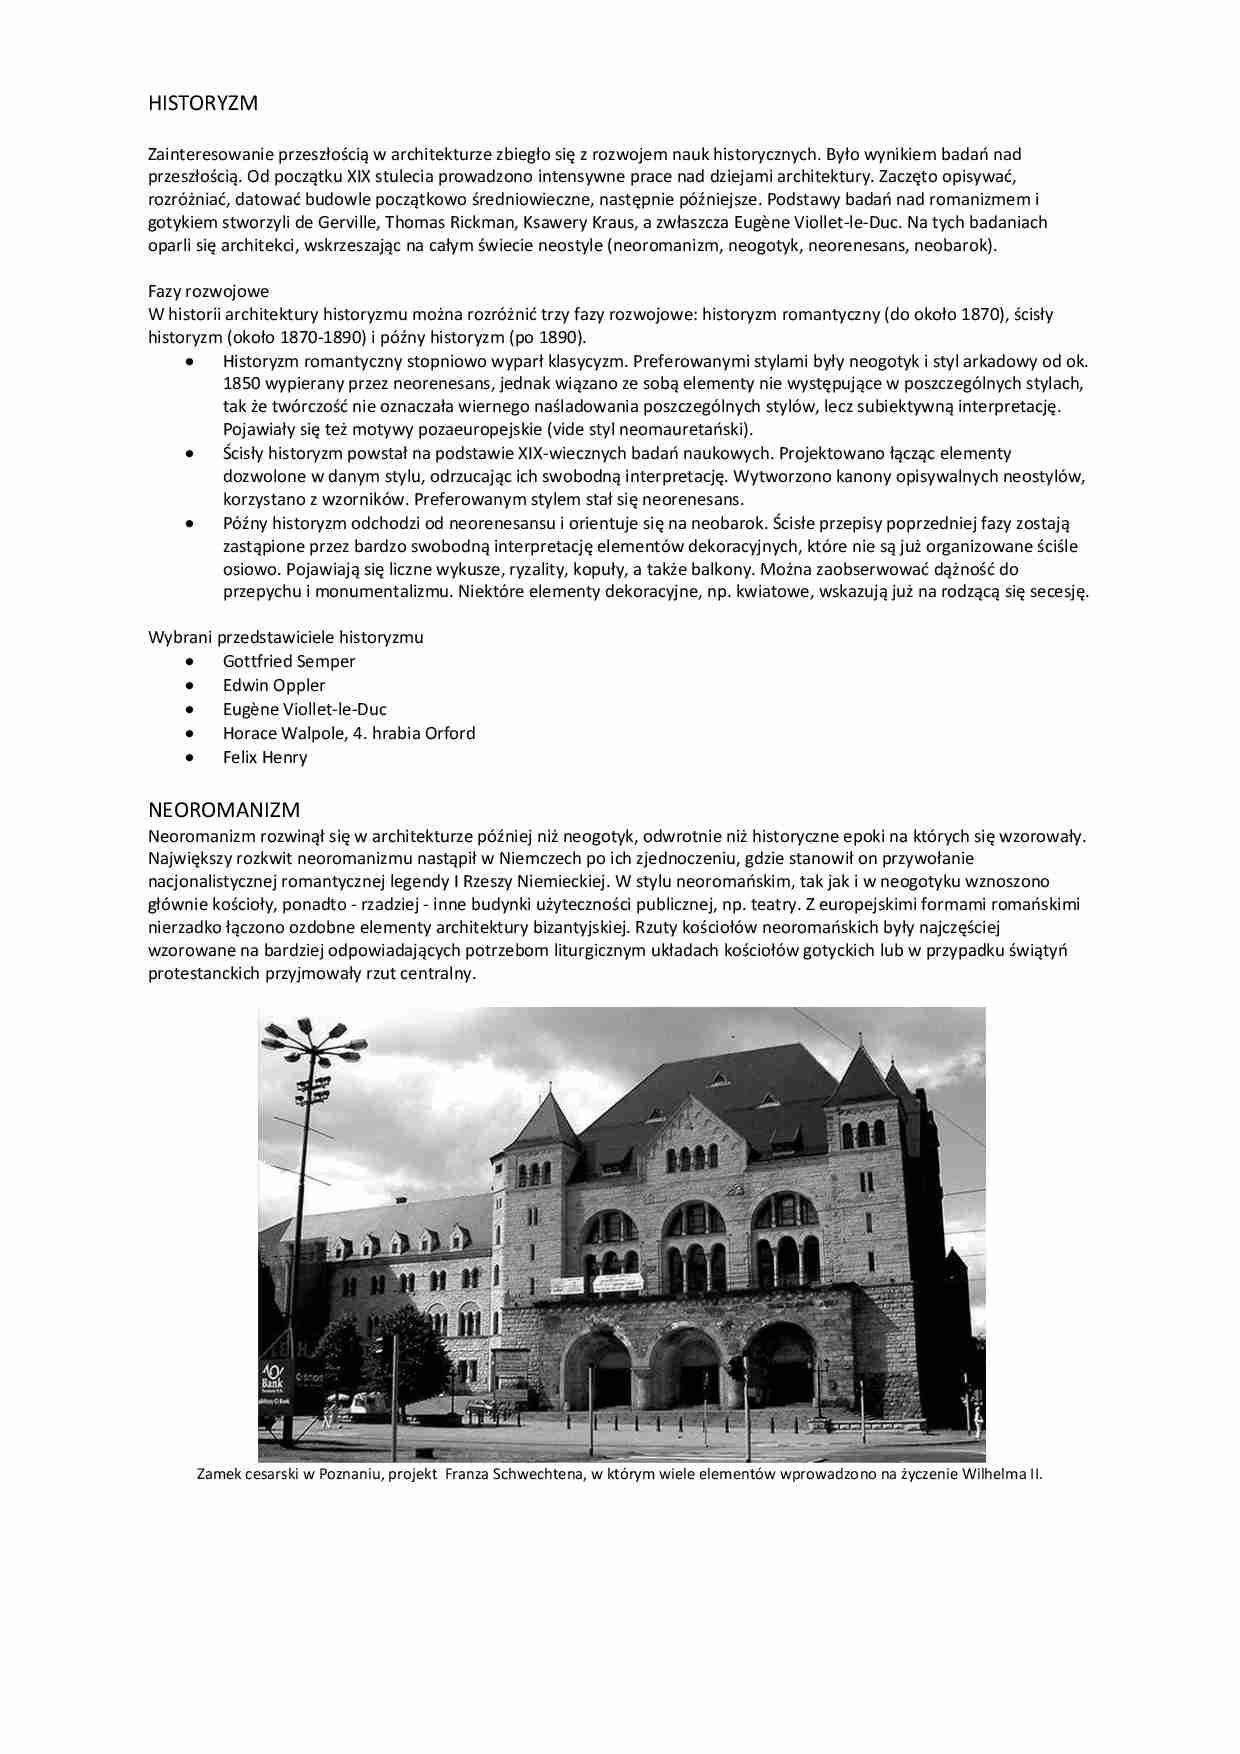 Historyzm w architekturze - strona 1